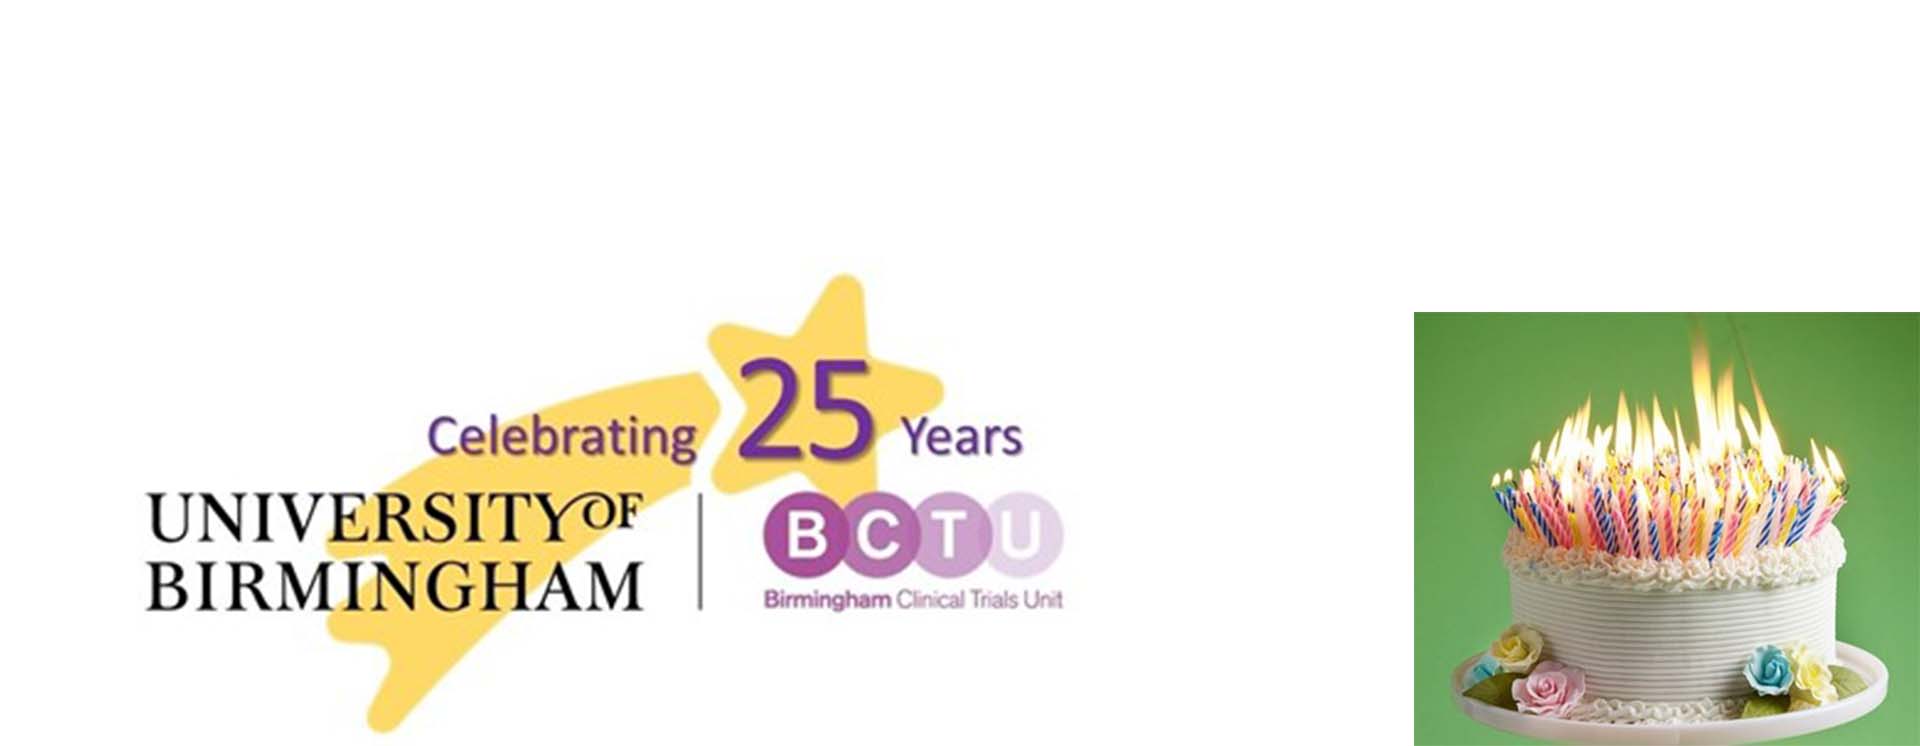 BCTU logo and birthday cake.